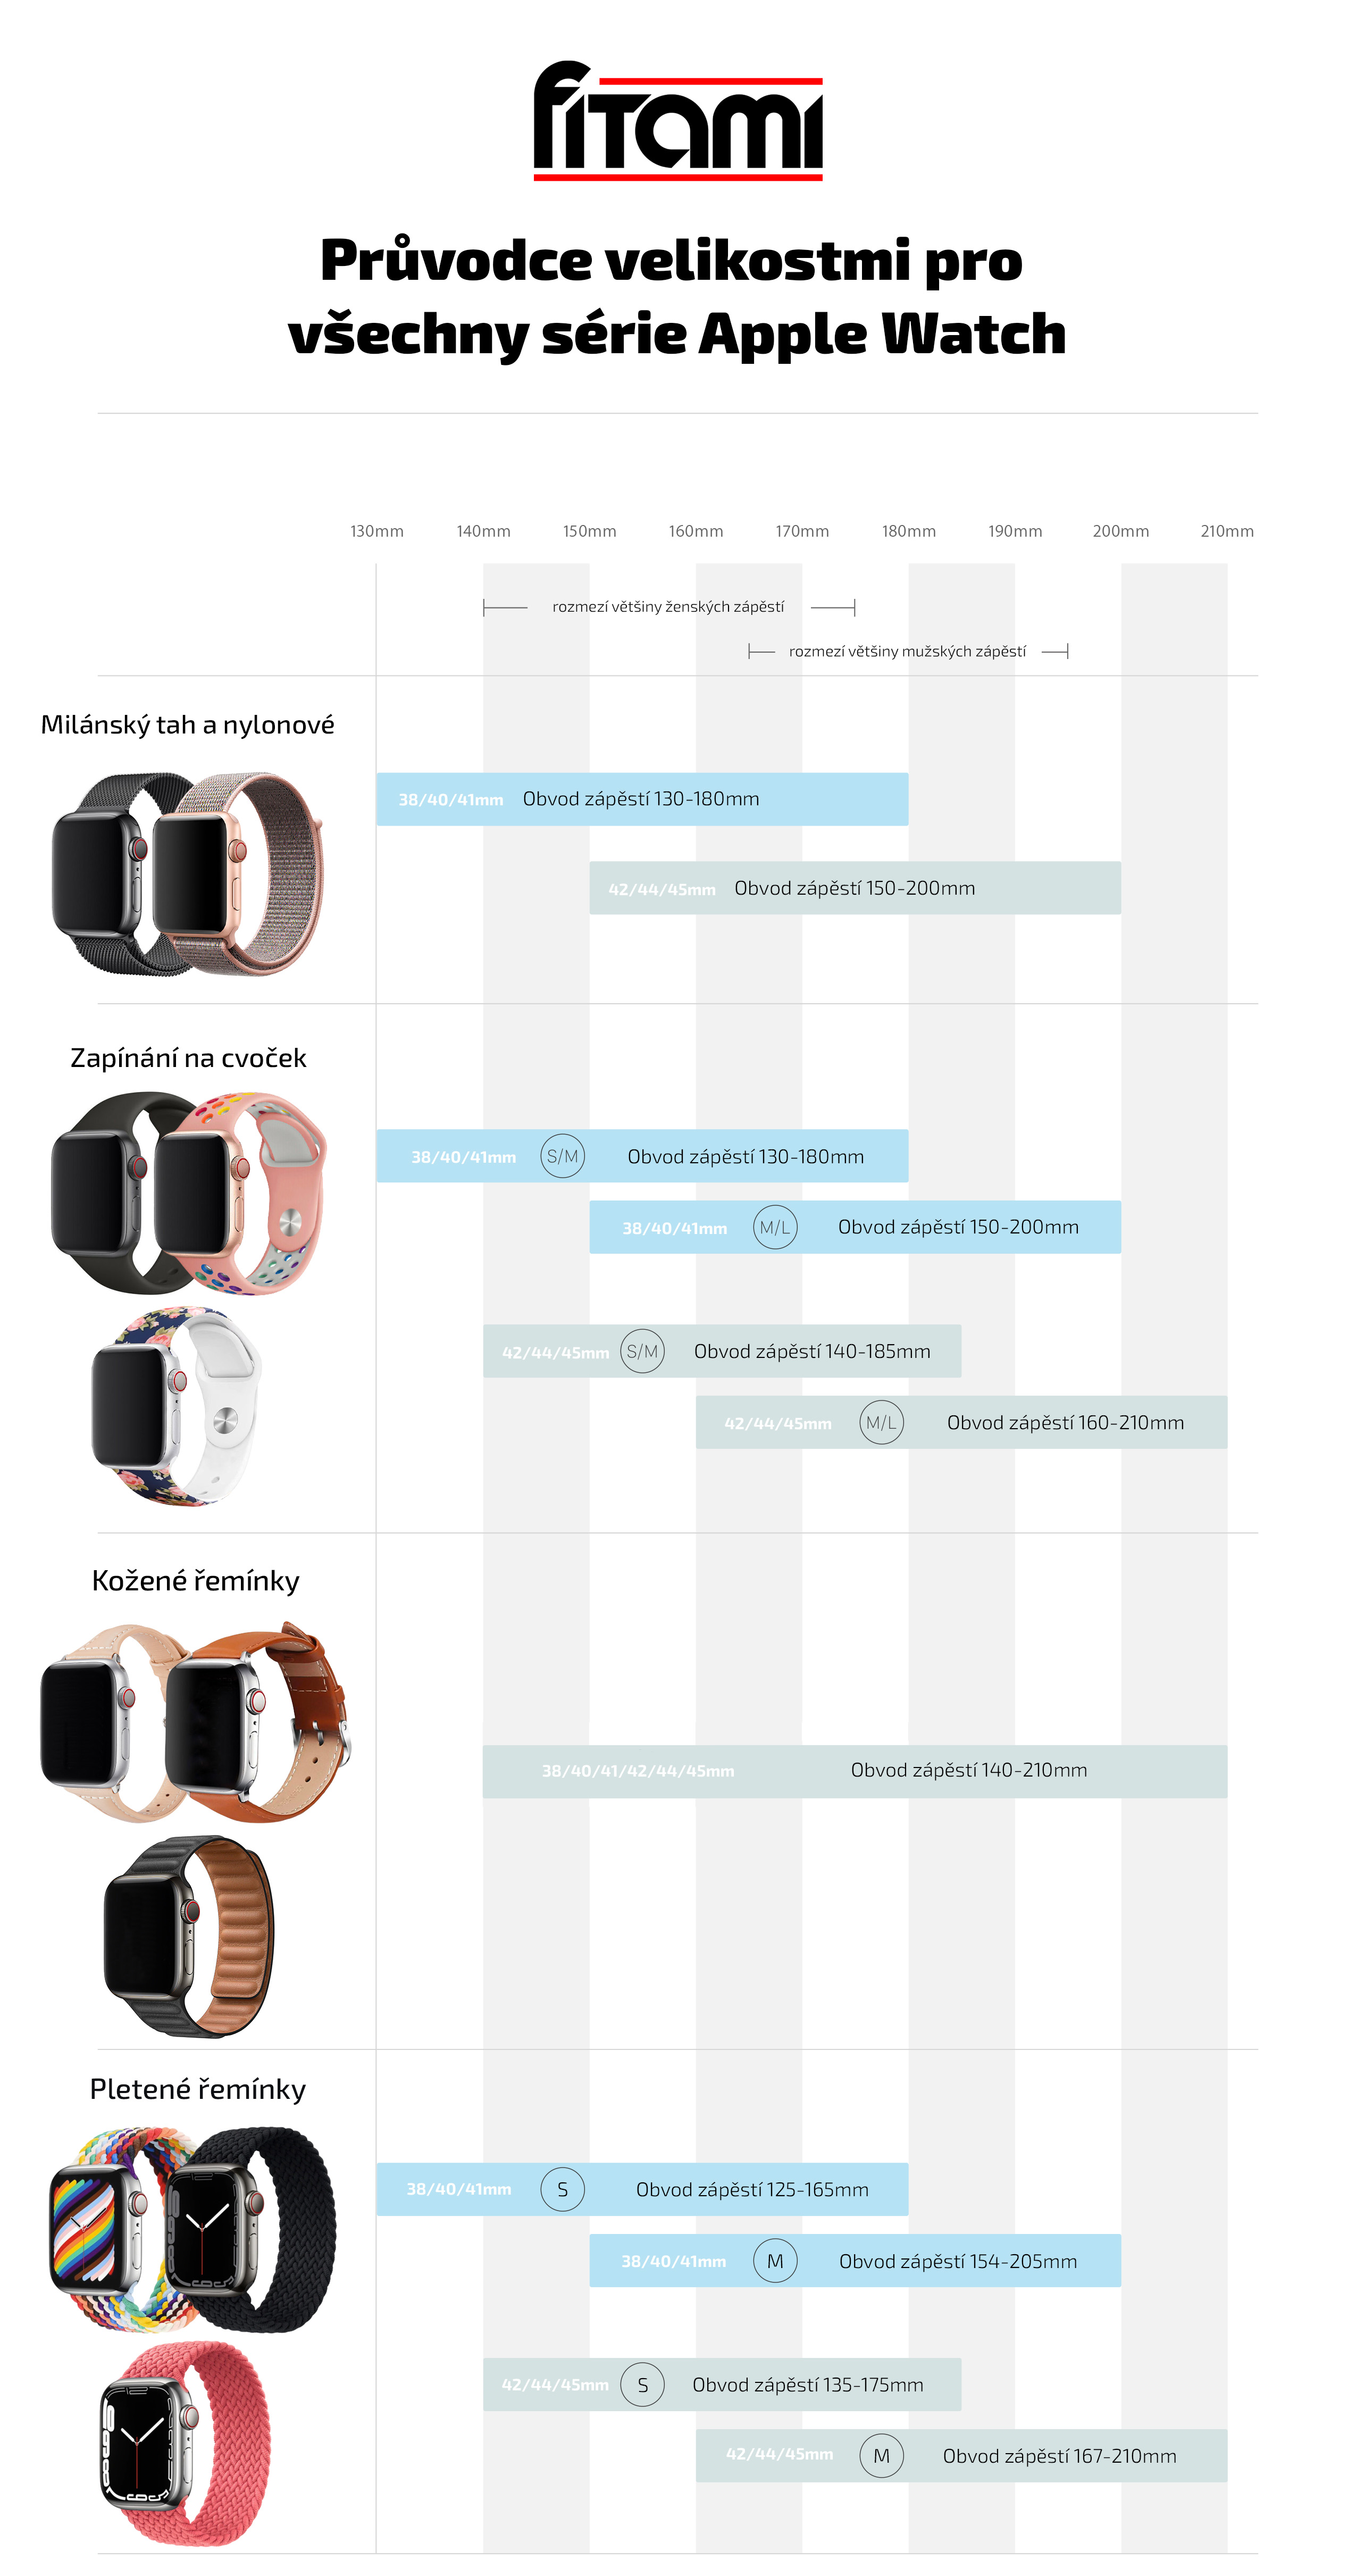 Jak zjistit velikost Apple Watch?